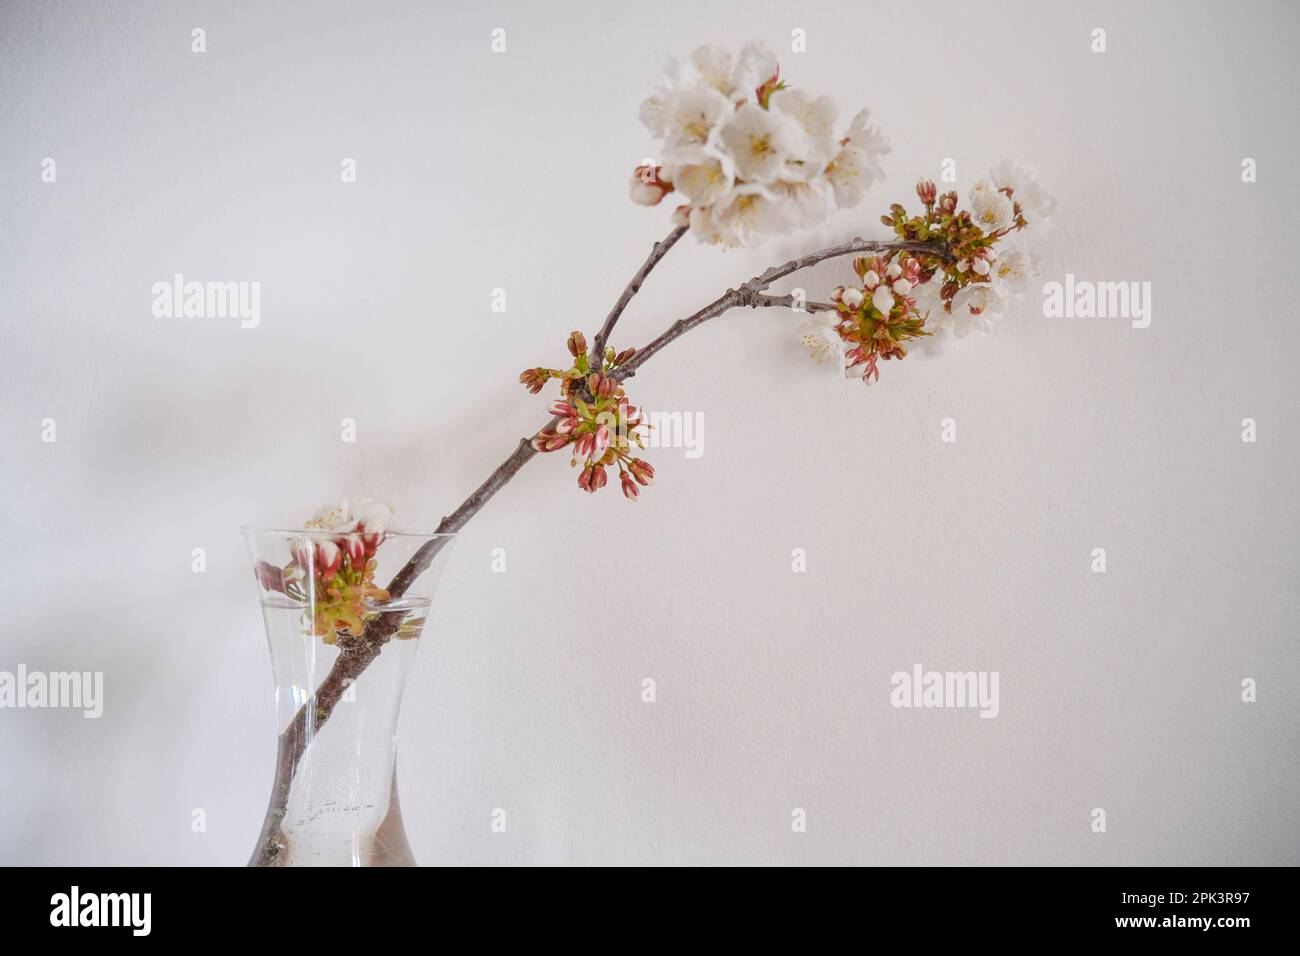 branche de cerisier avec fleurs blanches dans un vase sur fond blanc. Décoration intérieure. Copier l'espace Banque D'Images